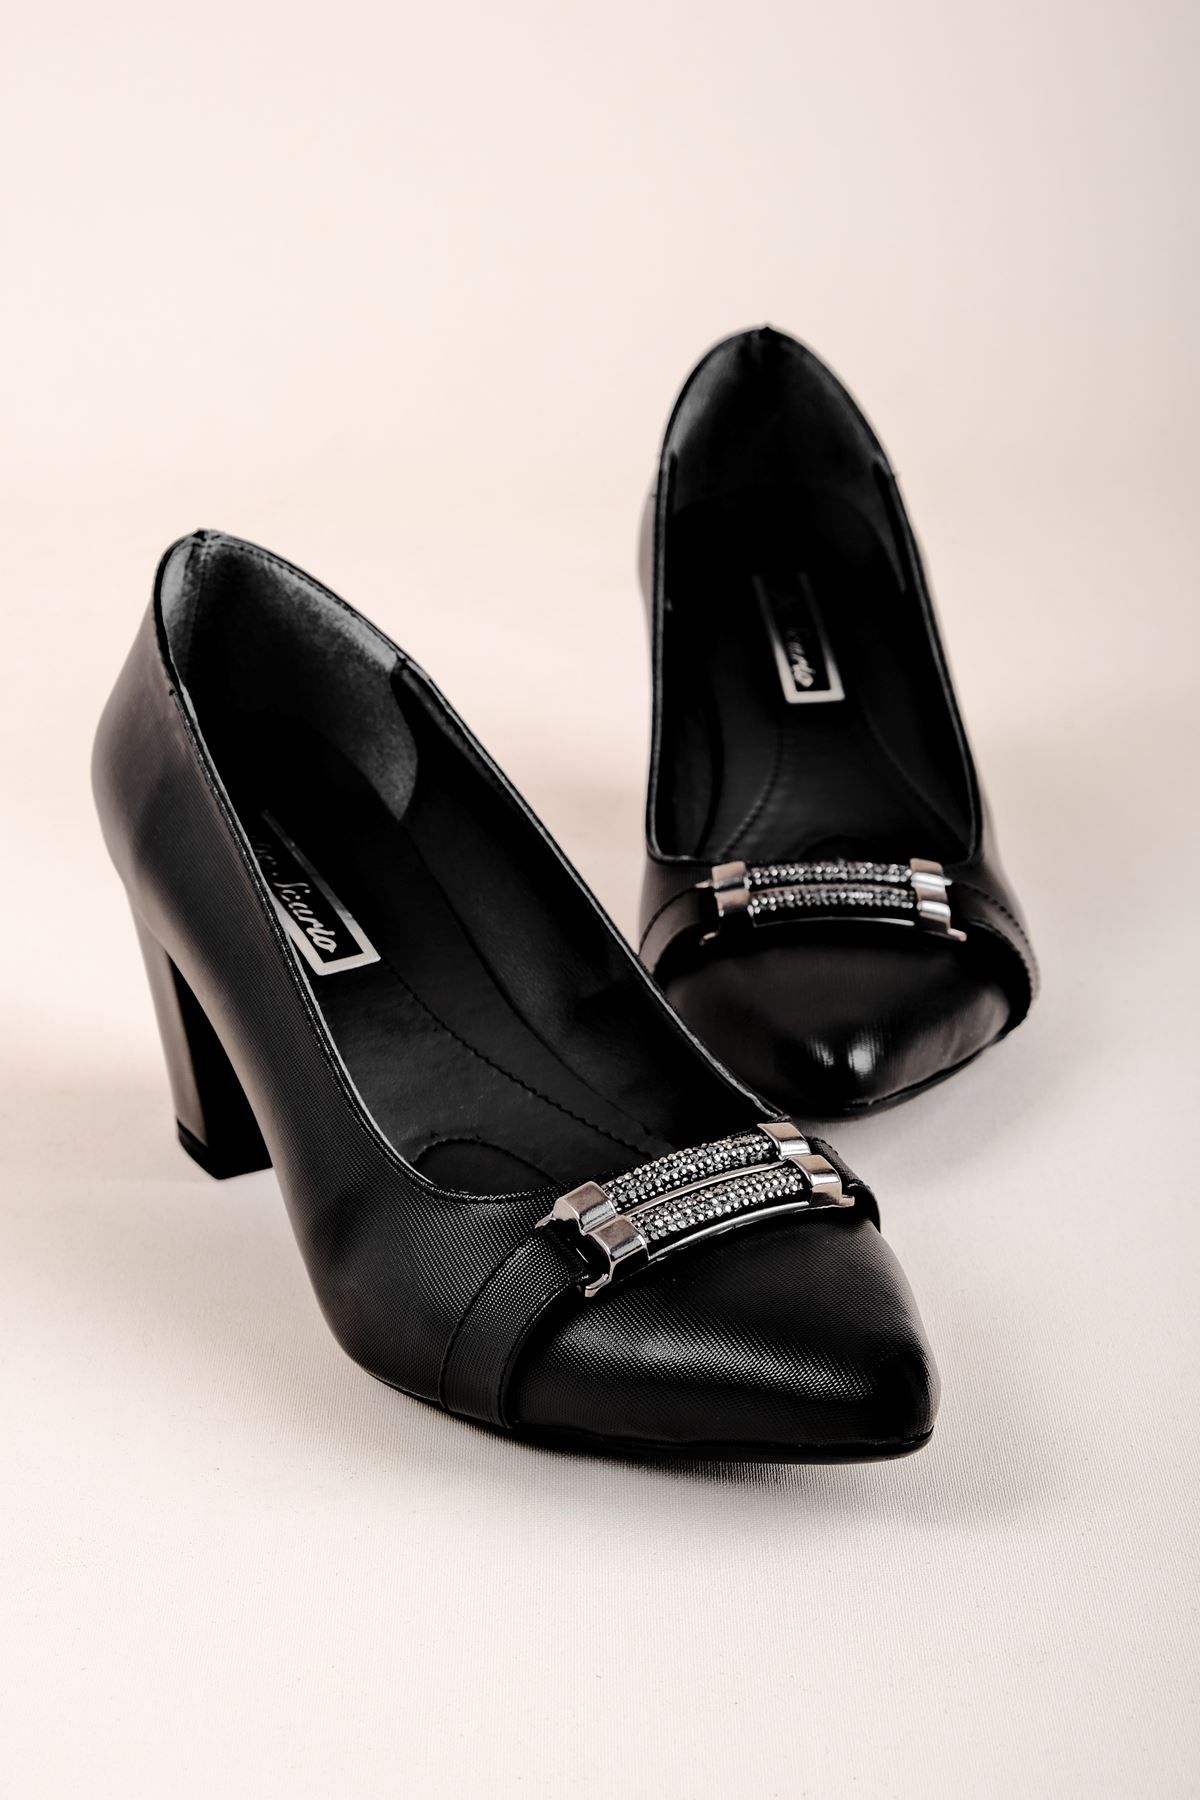 Raben Kadın Topuklu Ayakkabı Taşlı Metal Detaylı-siyah